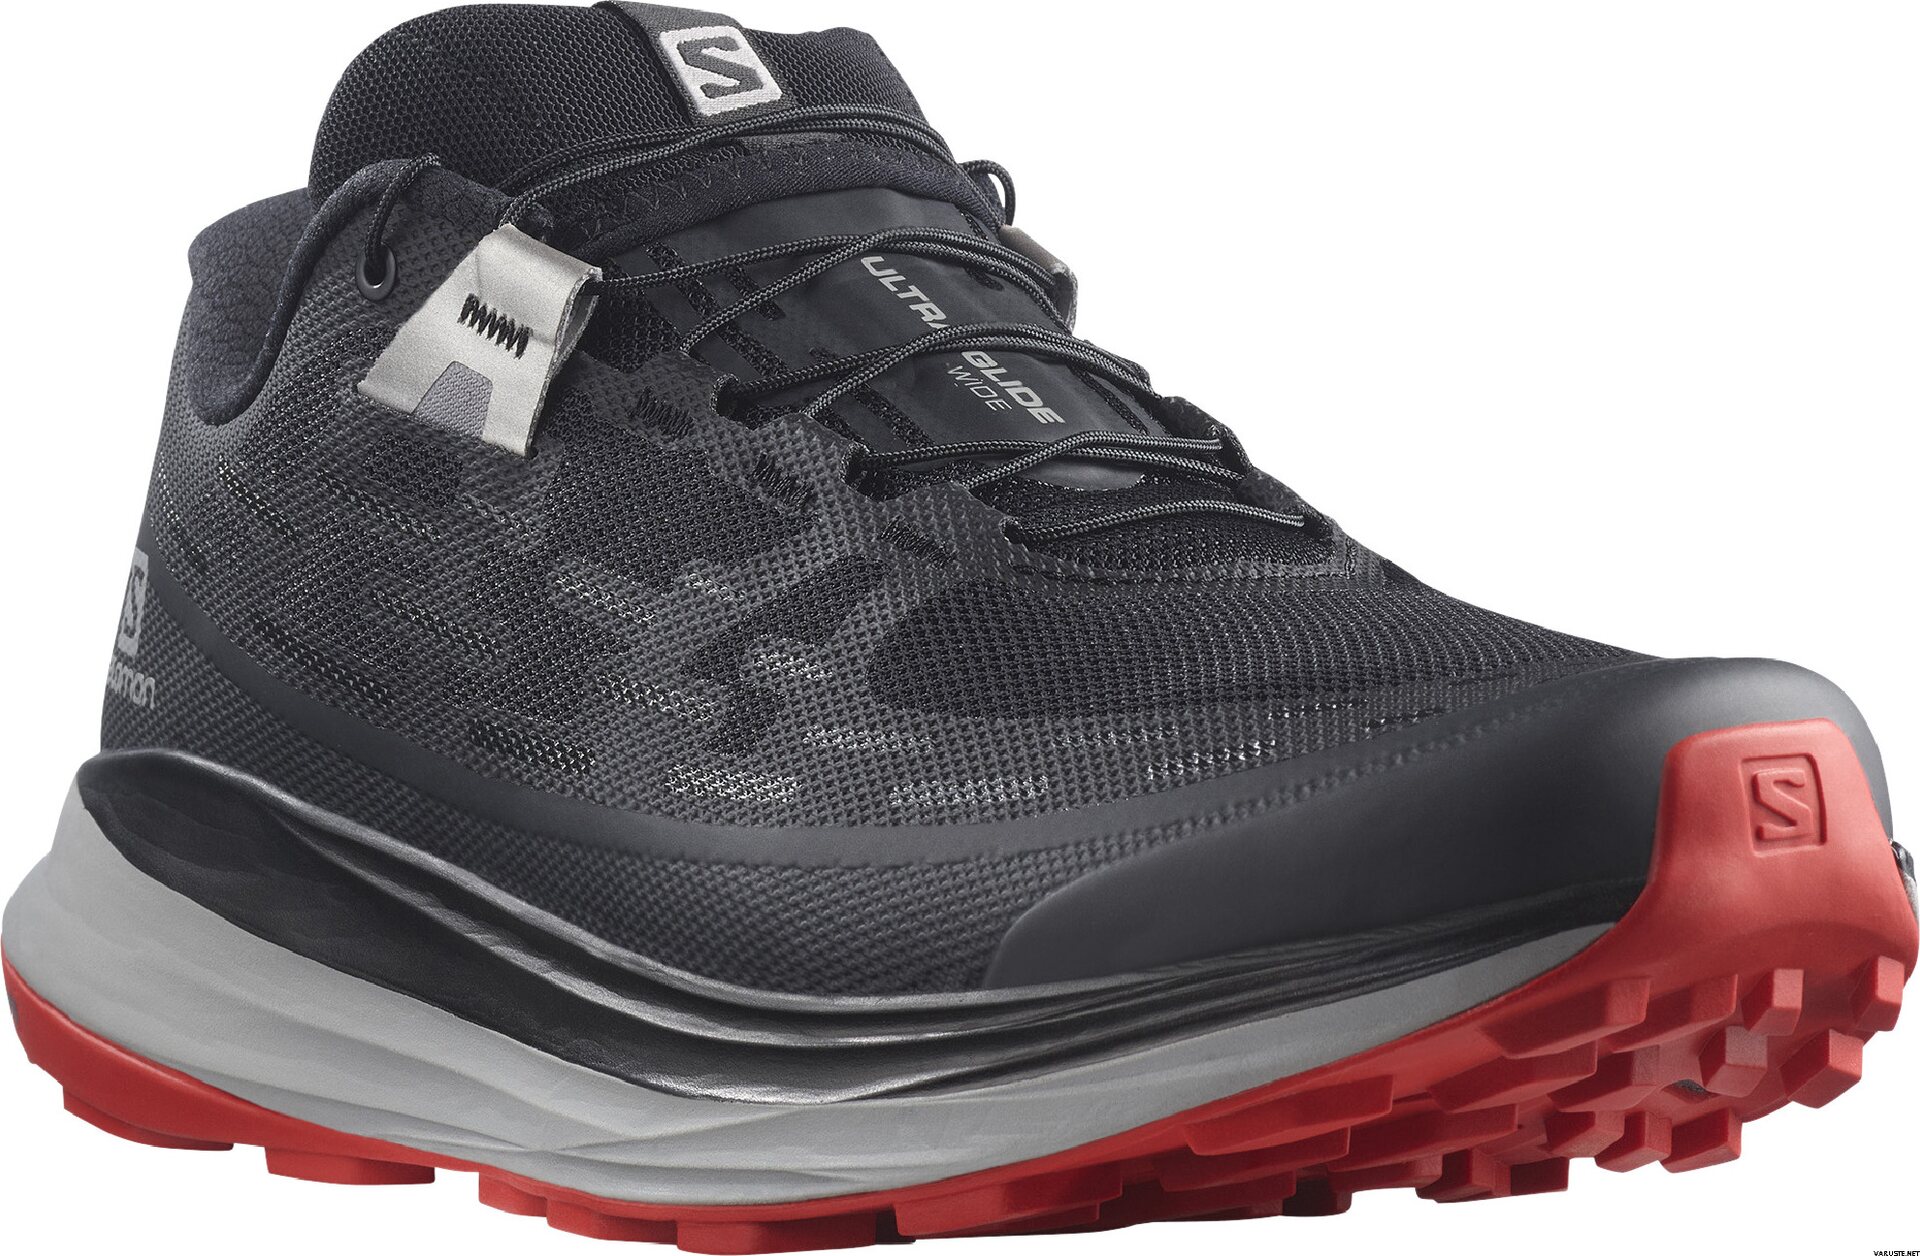 Salomon Ultra Glide Wide Mens | Men's trail running shoes | Varuste.net ...